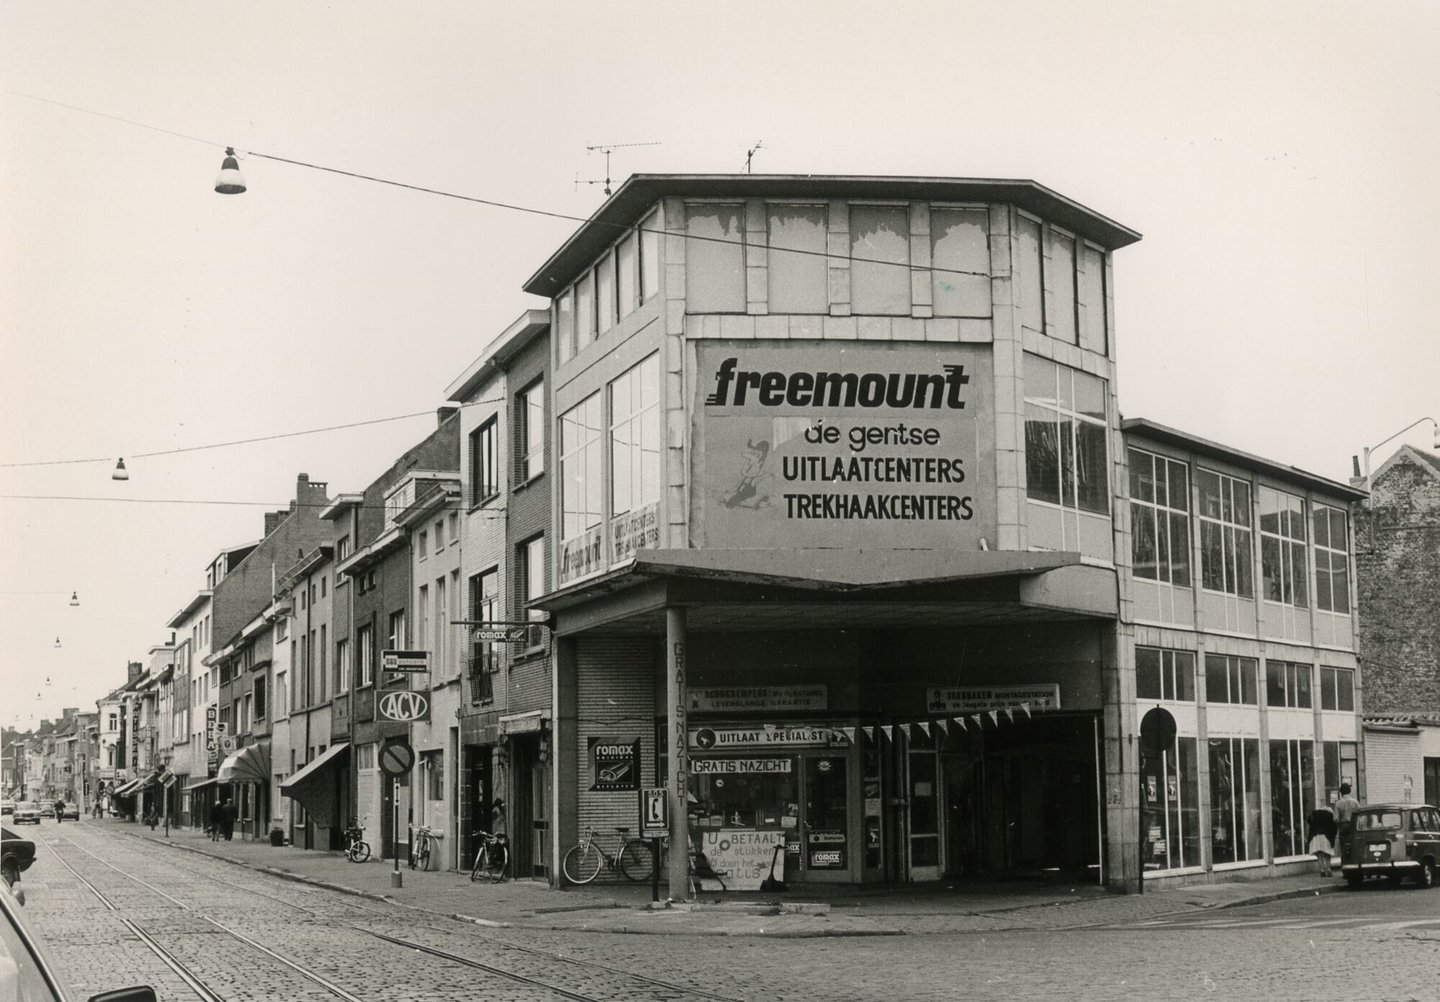 Straatbeeld met uitlaatcenter Freemount in Gent